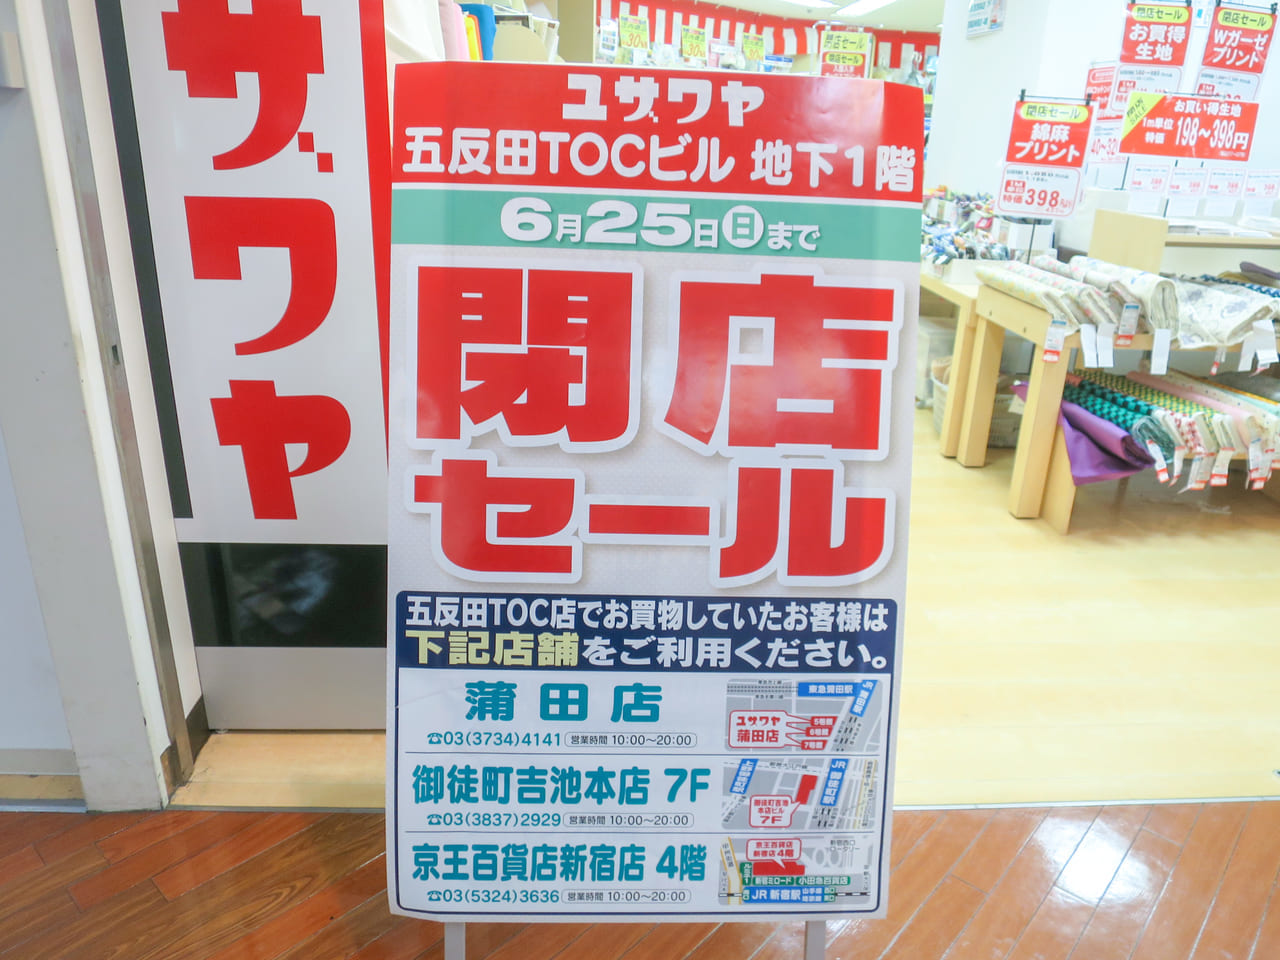 ユザワヤ五反田TOC店閉店セール